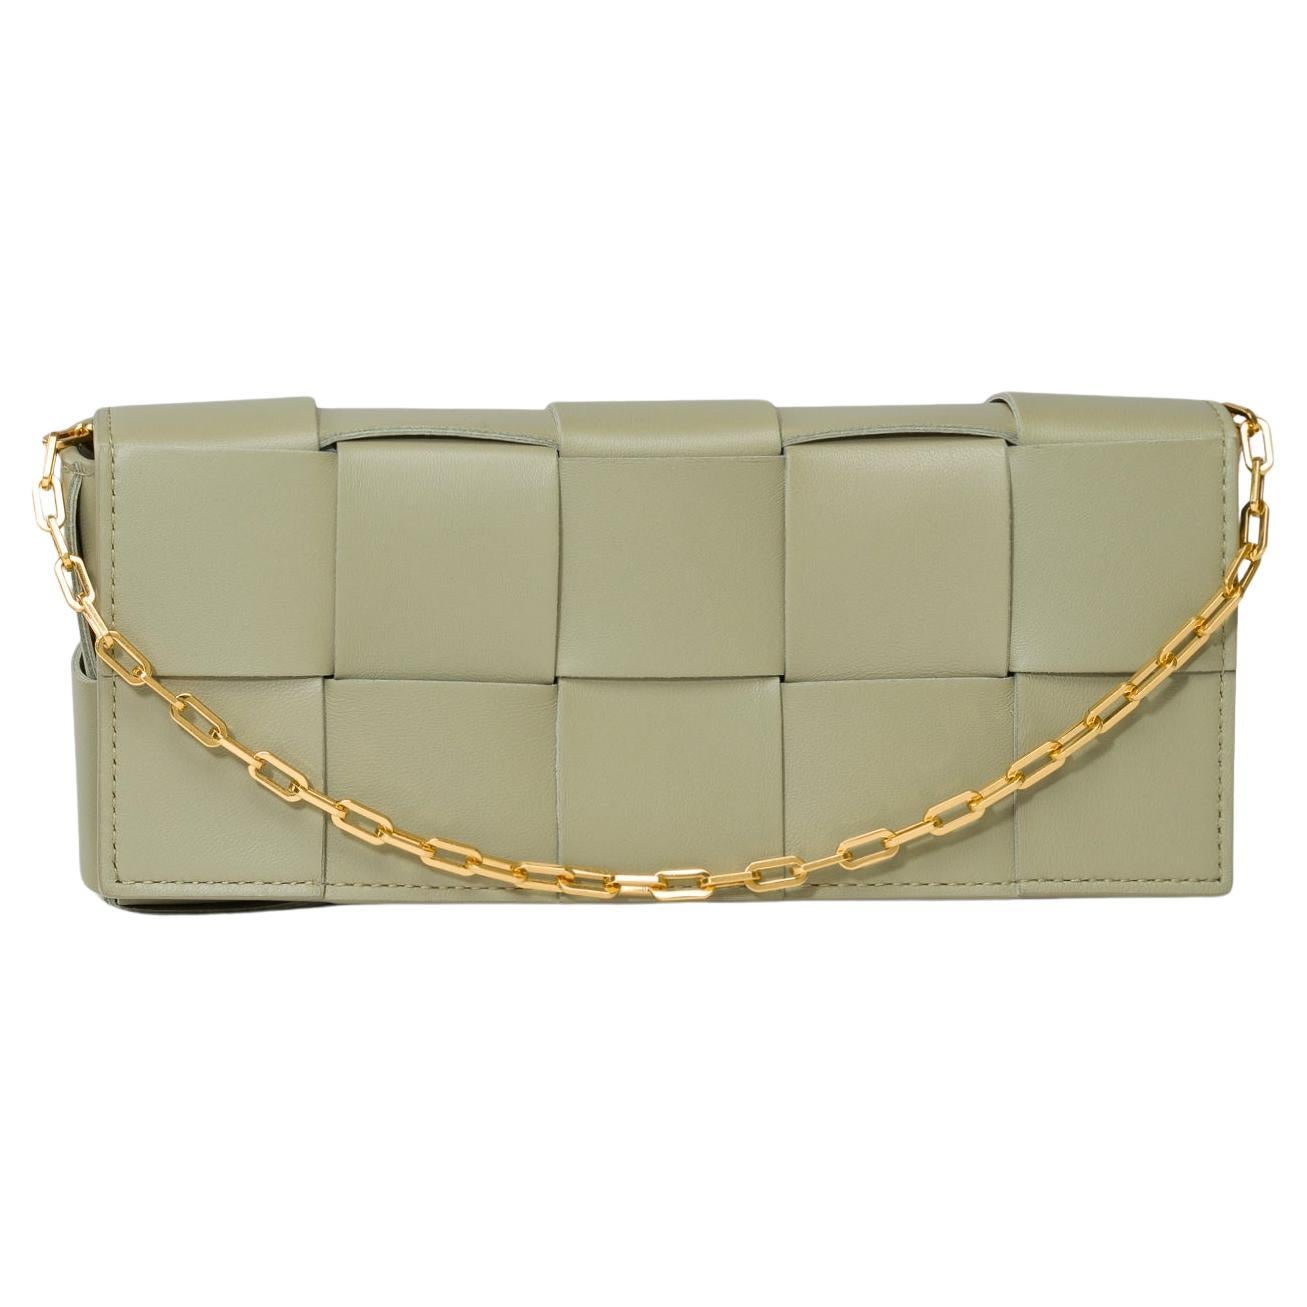 Bottega Veneta Cassette 23 shoulder bag in green lambskin leather, GHW For Sale